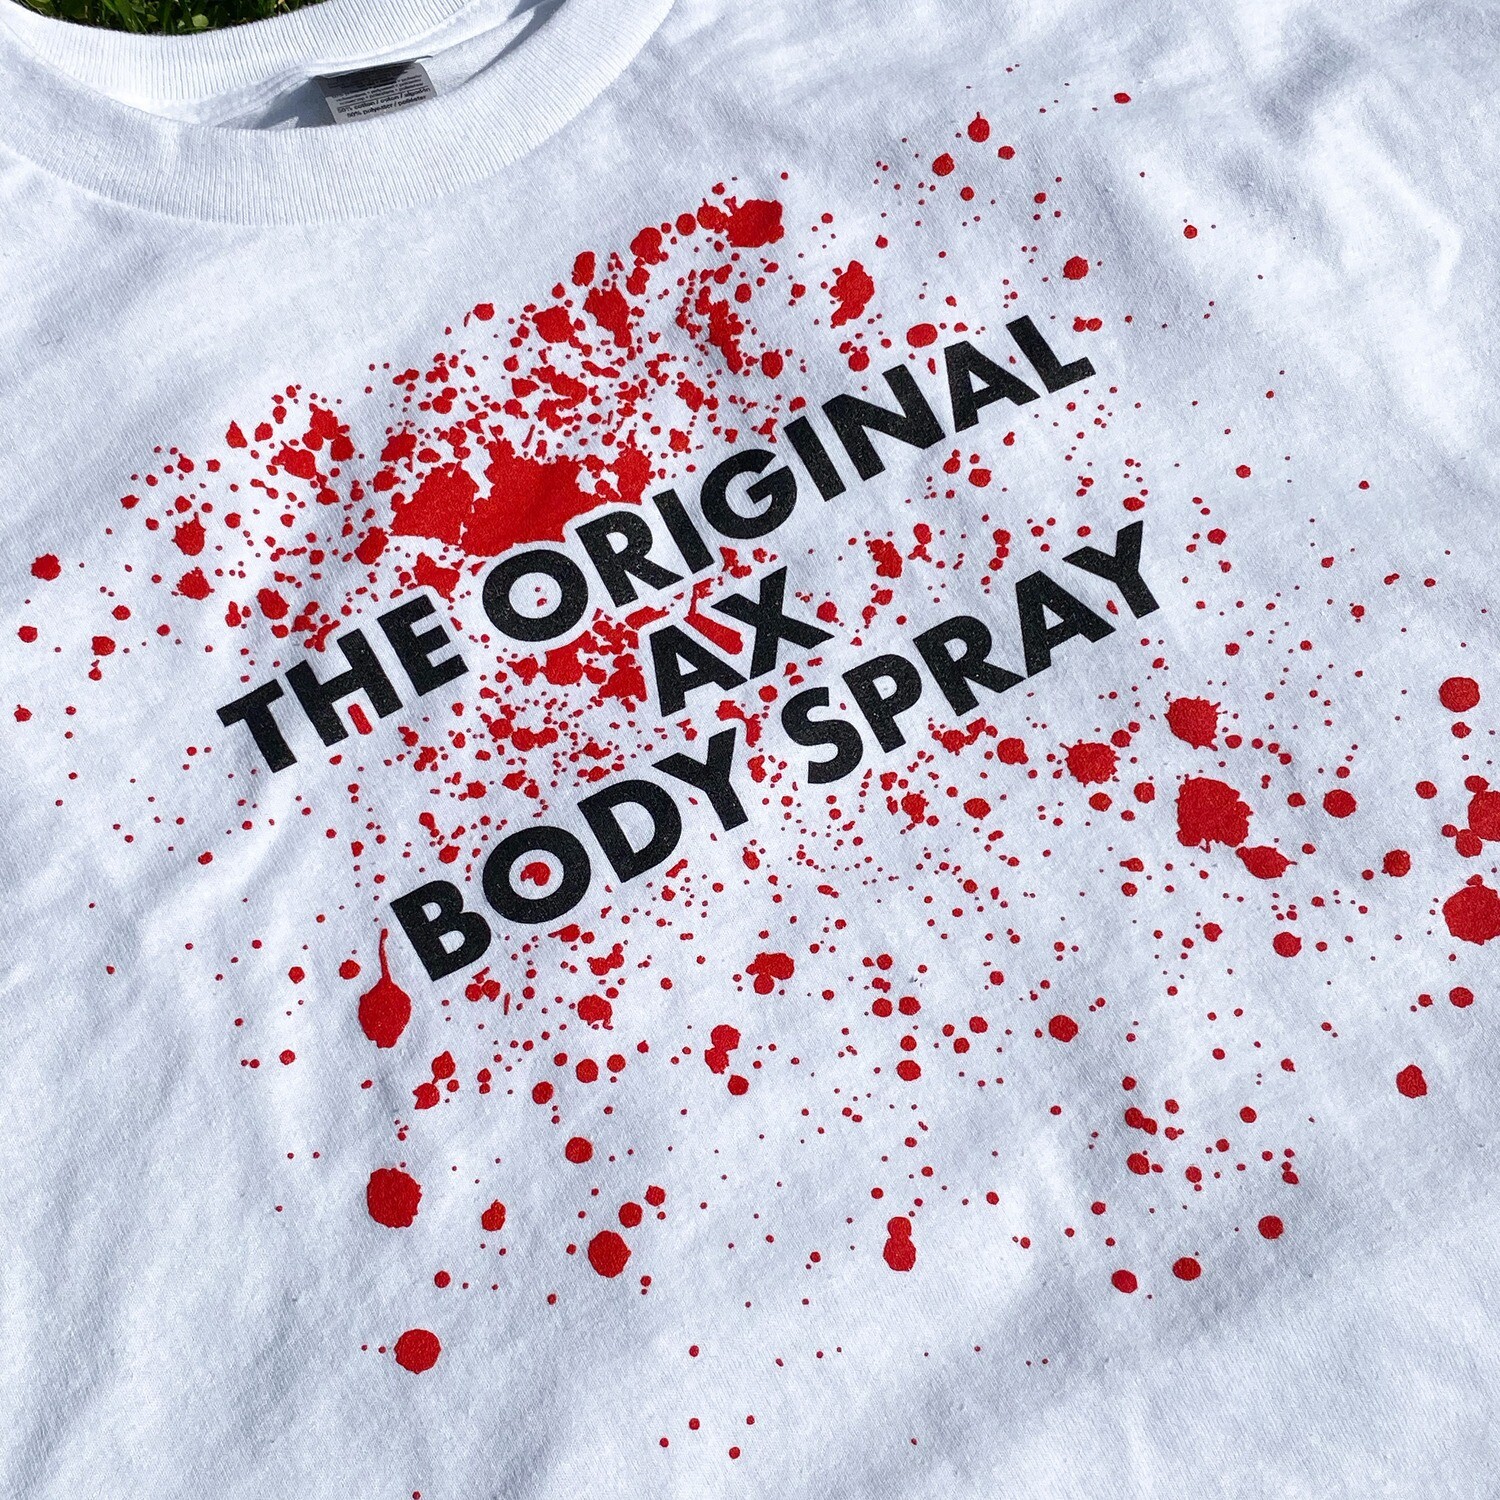 The Original Ax Body Spray T-Shirt